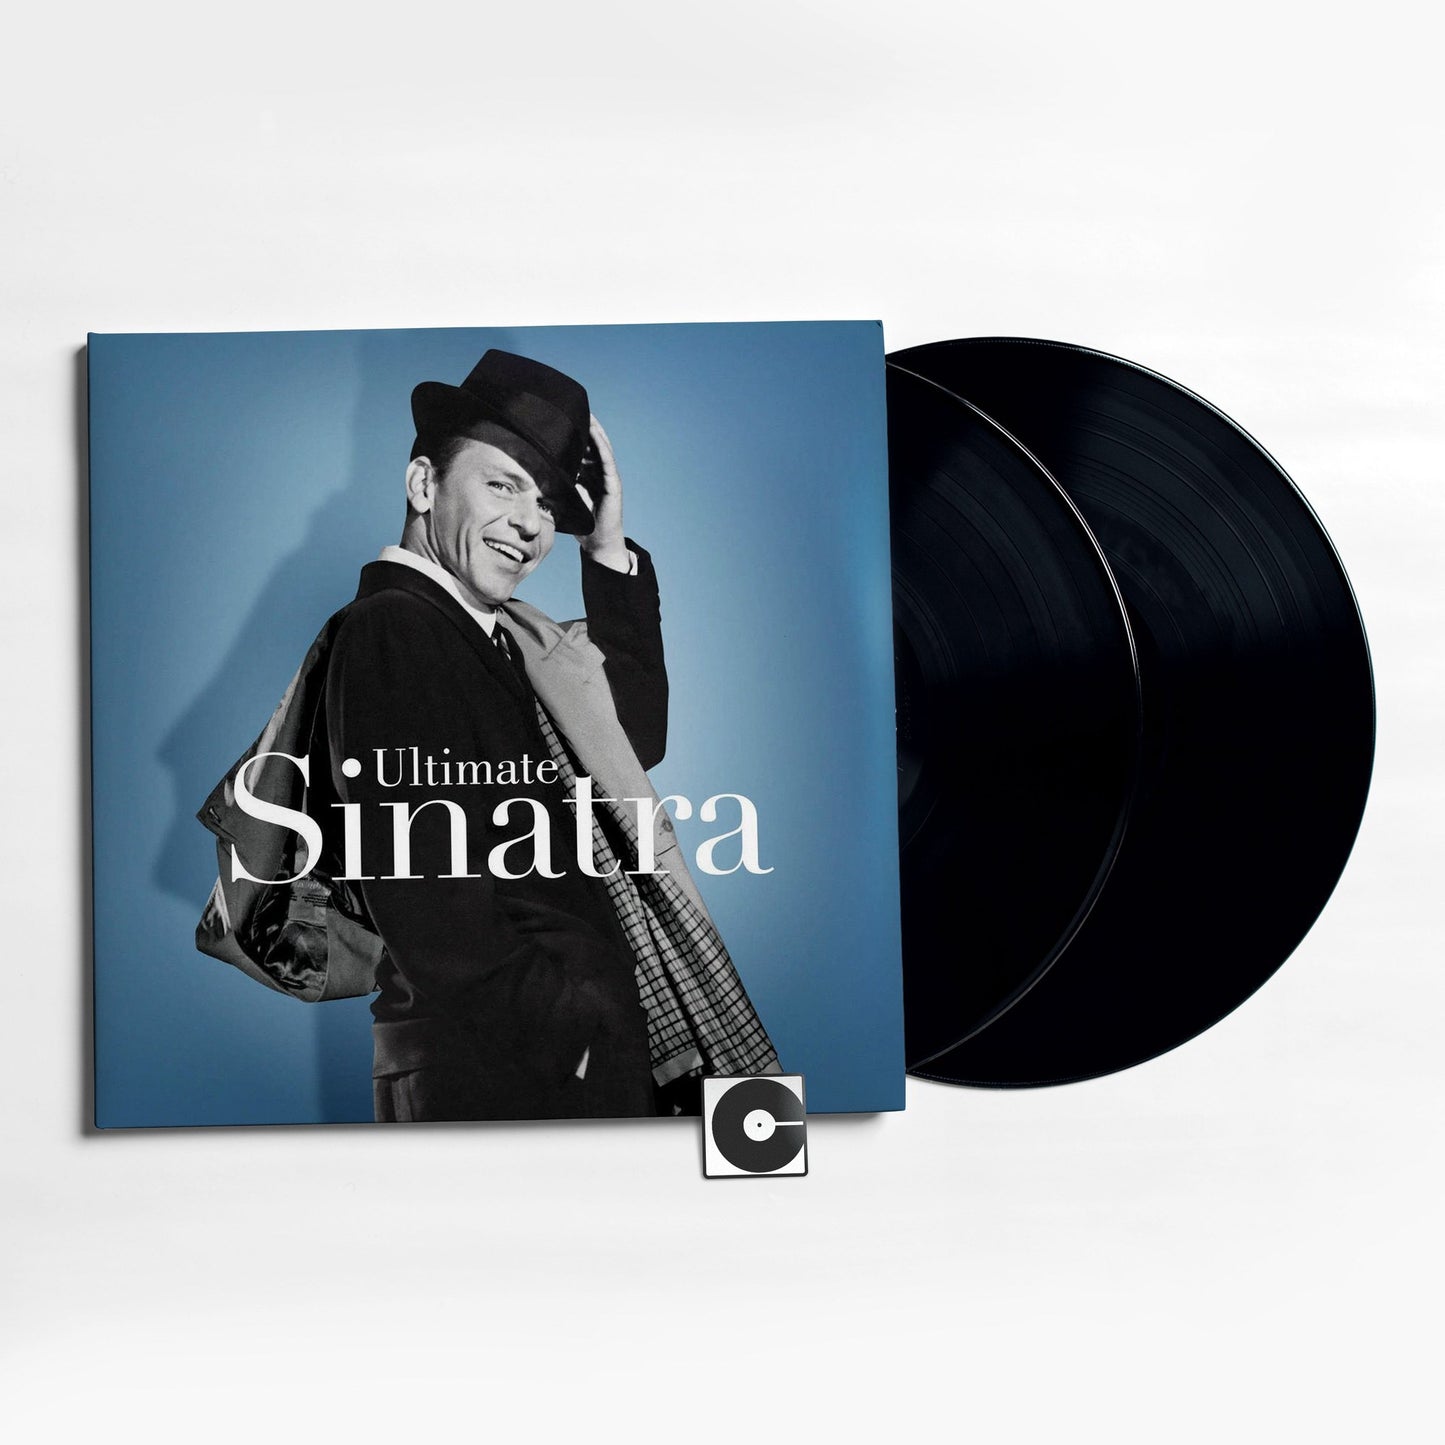 Frank Sinatra - "Ultimate Sinatra"